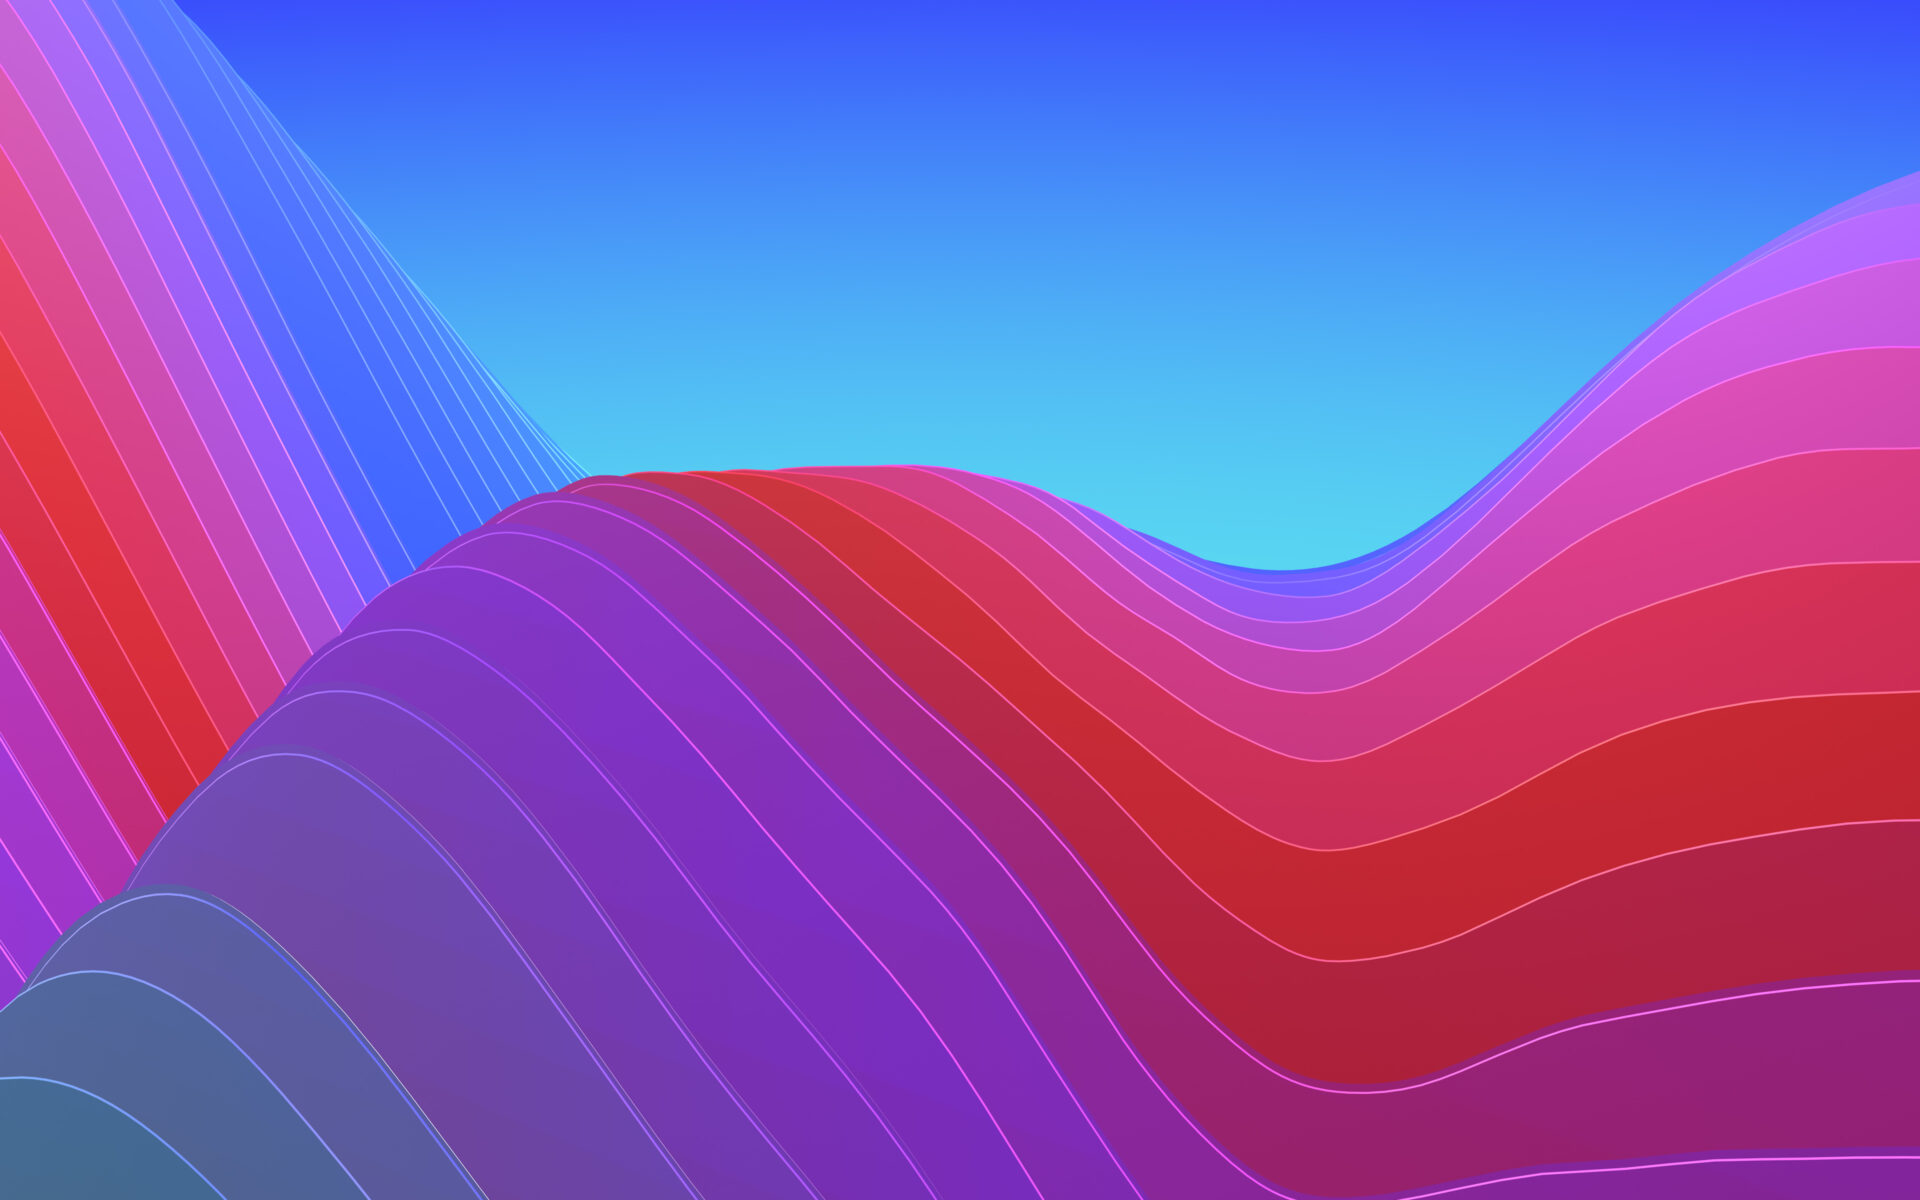 Abstract Waves Colorful7871818871 - Abstract Waves Colorful - Waves, Colorful, abstract